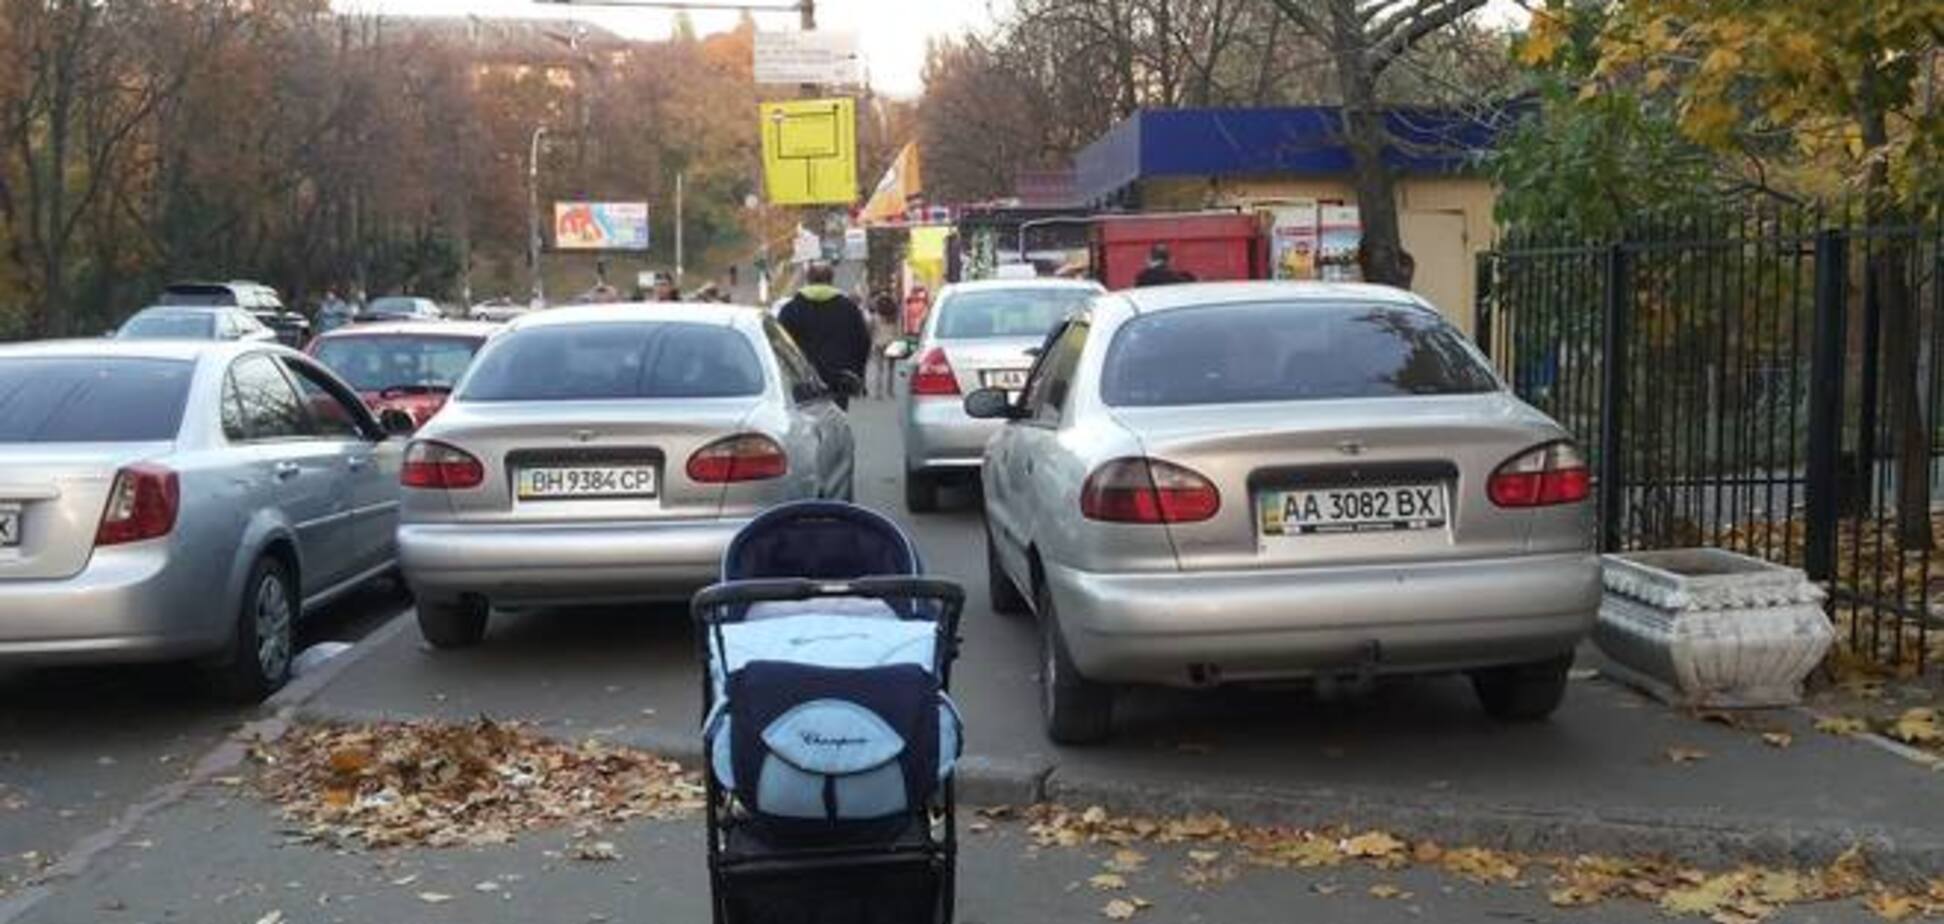 Як українці борються з порушниками паркування: сміття на авто і георгіївські стрічки